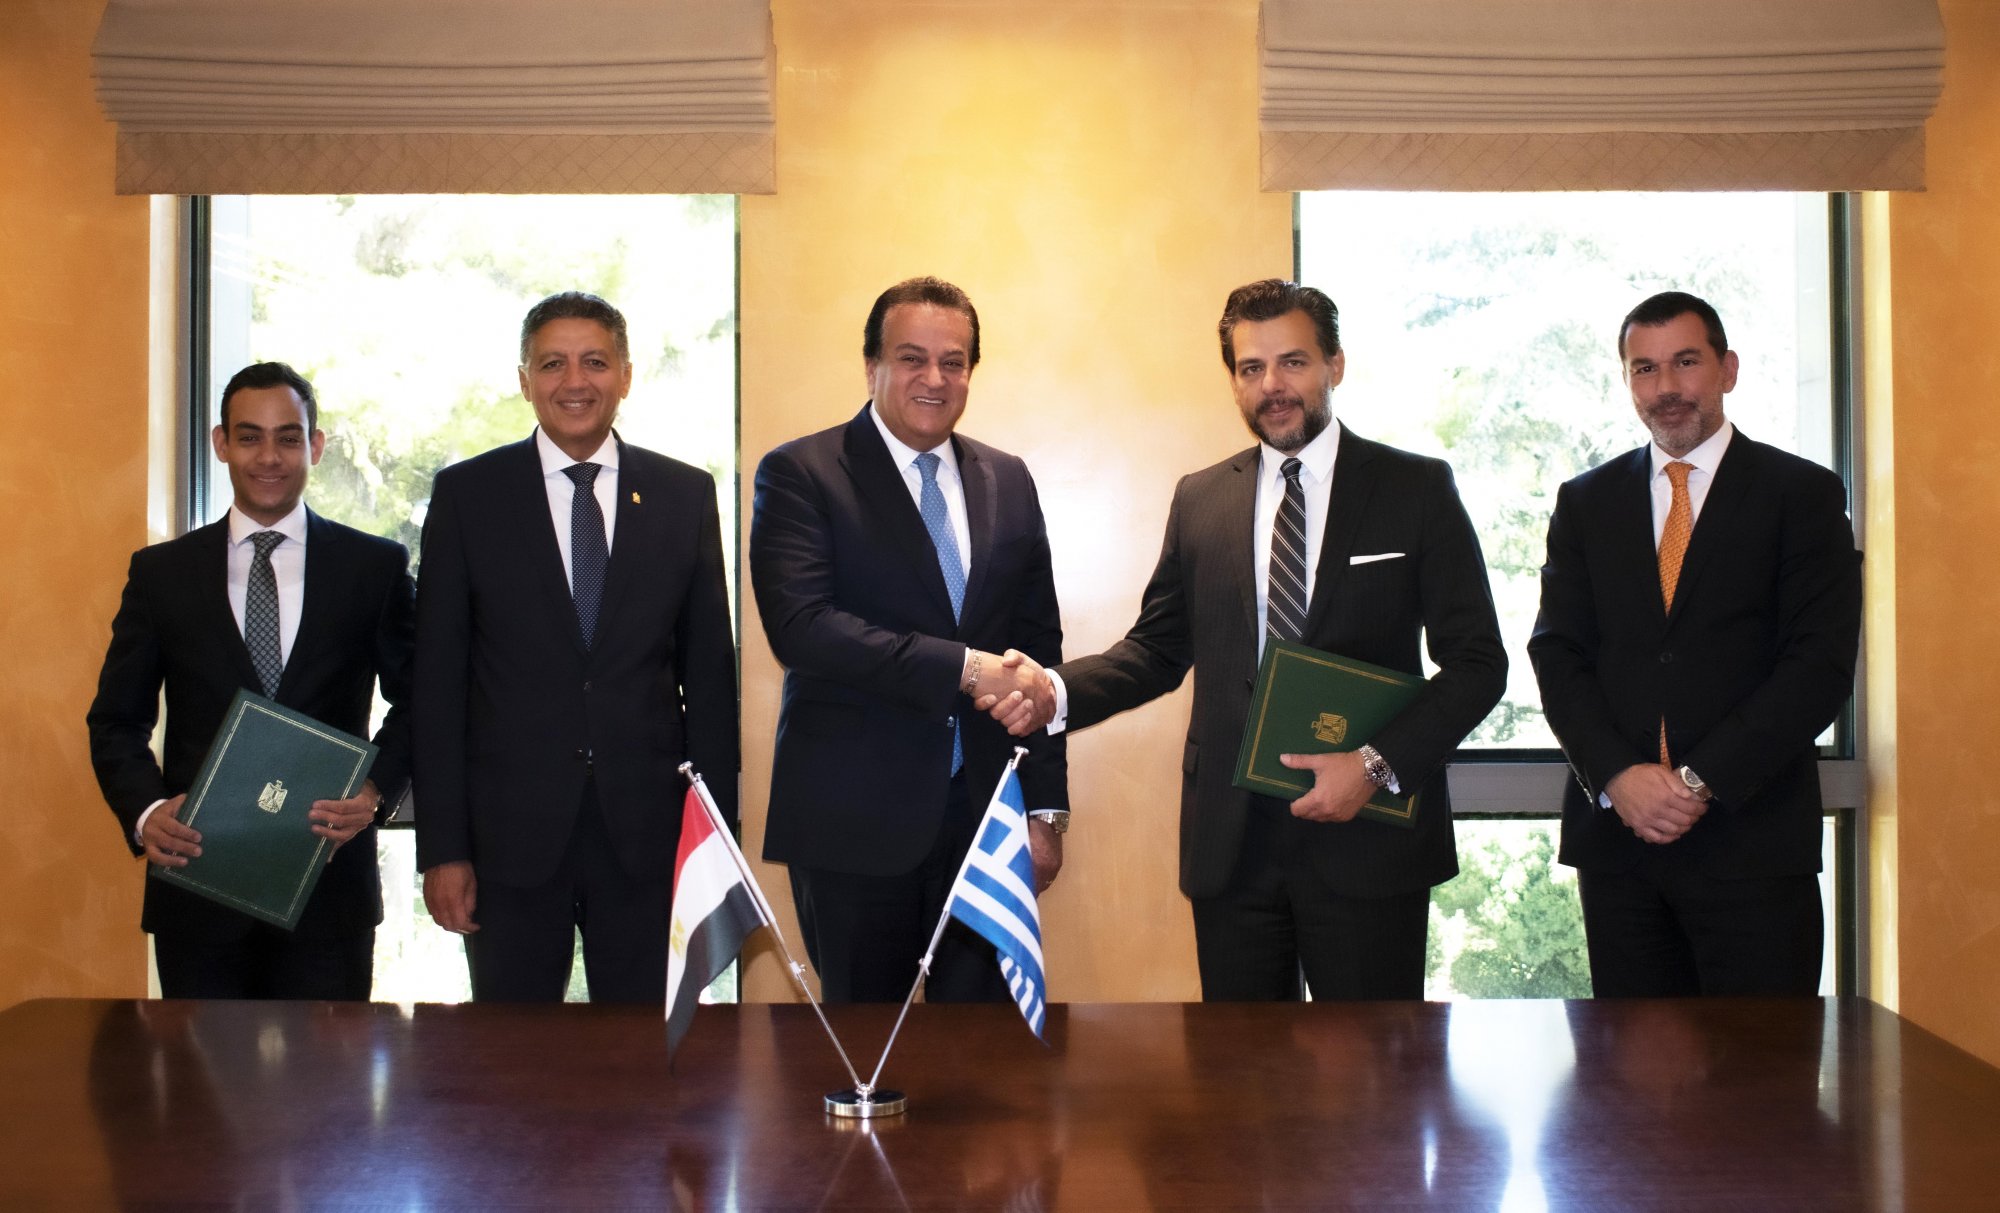 Υπογραφή Mνημονίου Συνεργασίας (MoU) μεταξύ του Ομίλου Ιατρικού Αθηνών και του Υπουργείου Υγείας της Αιγύπτου